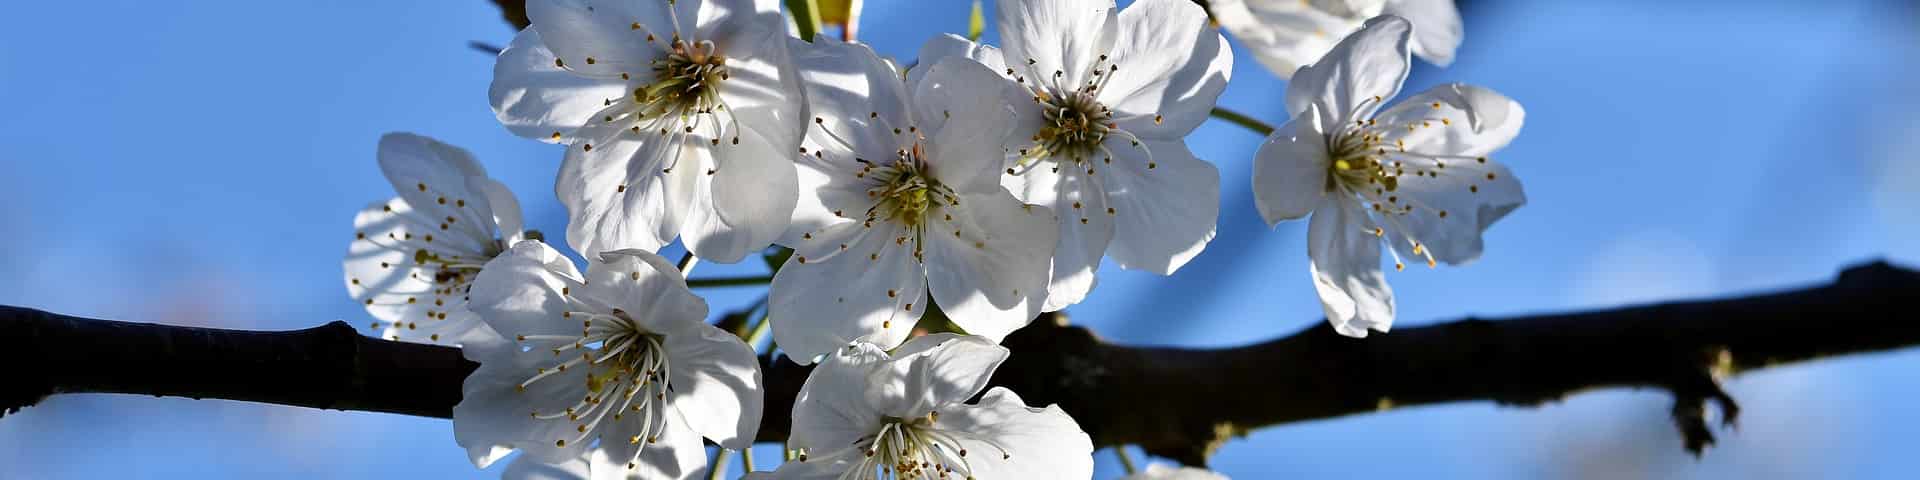 Ast mit Kirschblüten von veredelten Kirschbaum-Sorten